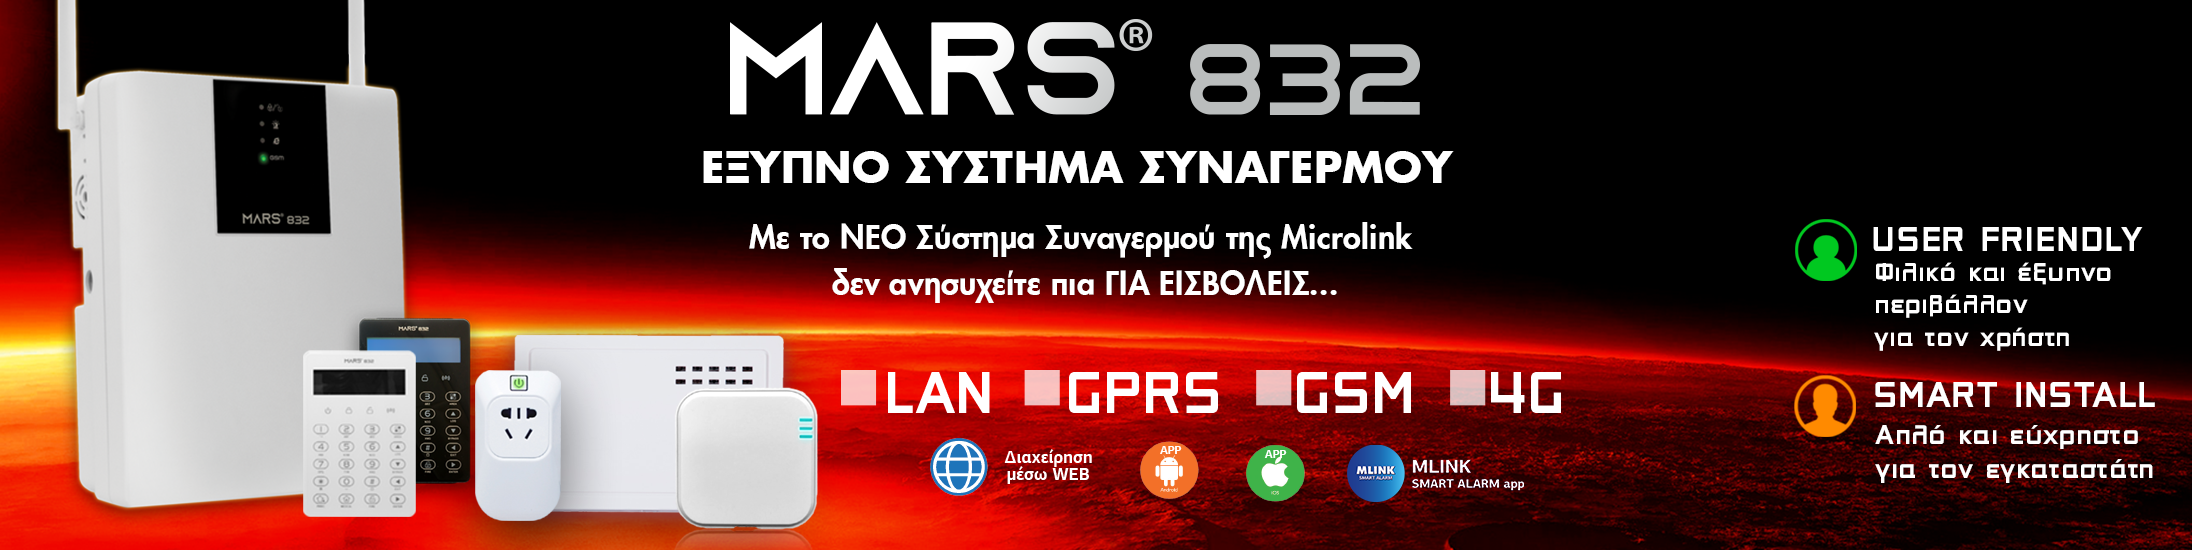 MARS 832